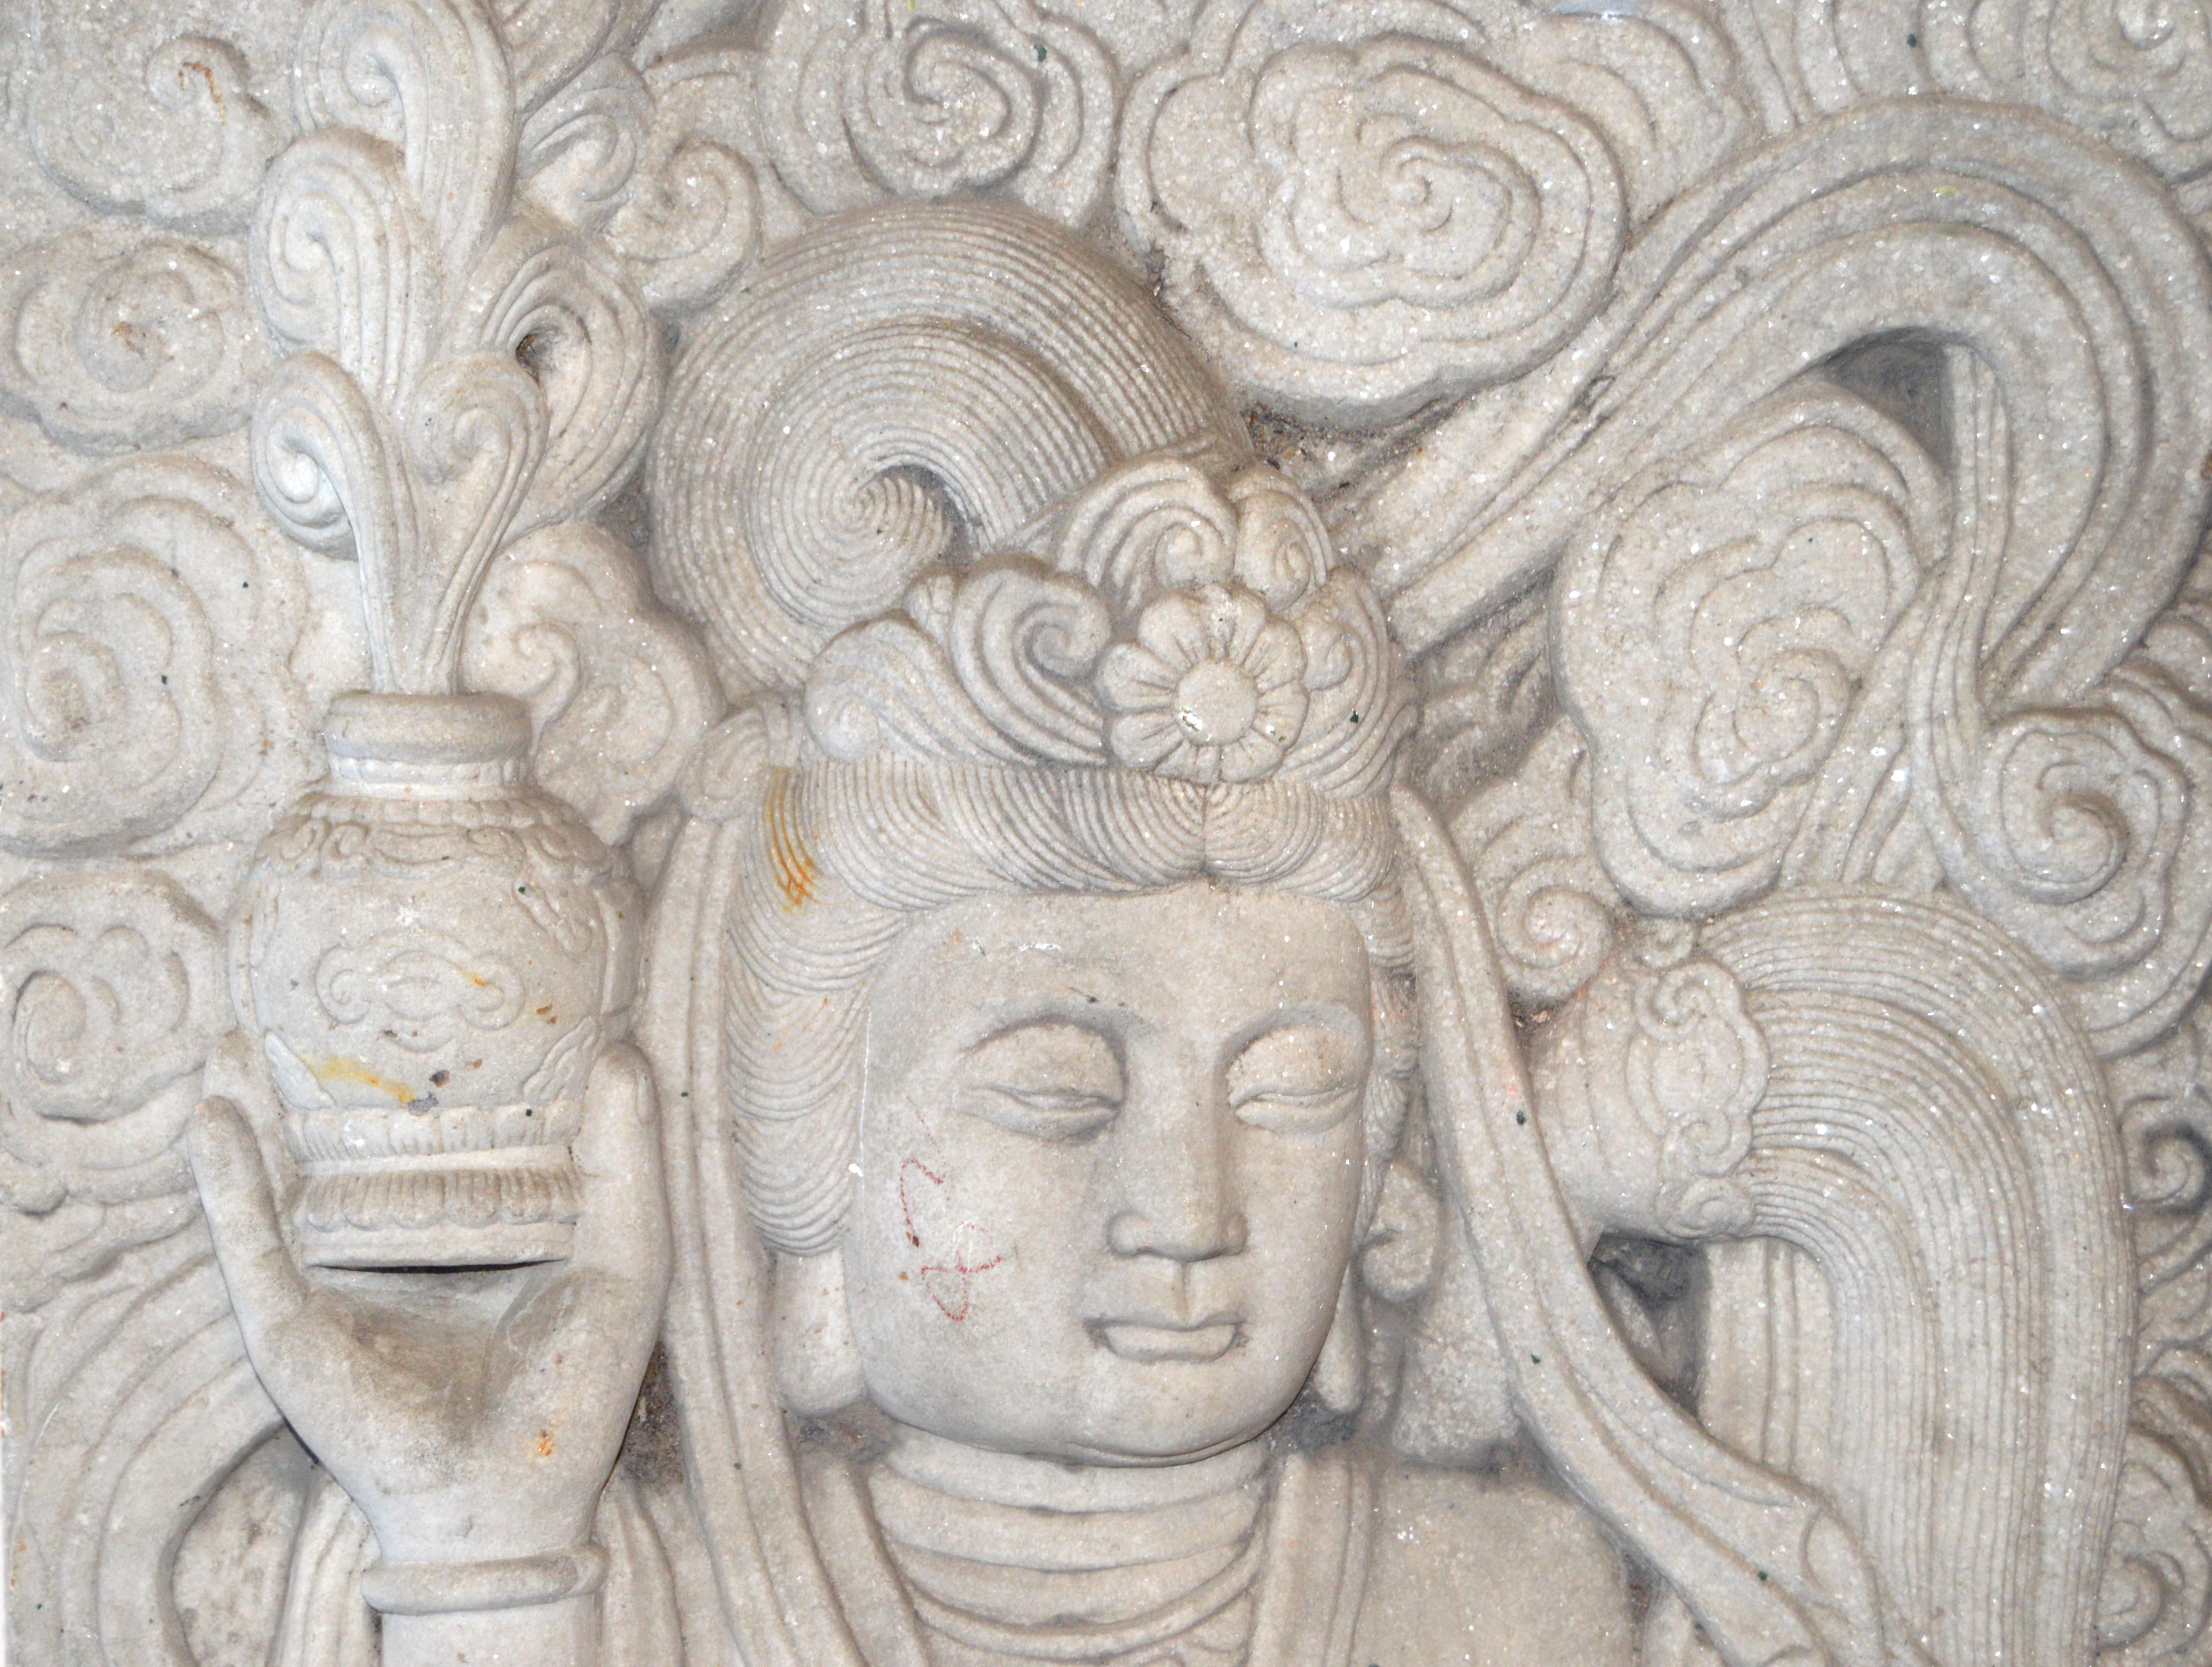 Eine große chinesische Vintage handgeschnitzten weißen Stein buddhistischen Tempel Skulptur eines Bodhisattva. Diese großformatige chinesische Skulptur wurde aus weißem Stein geschnitzt und zeigt einen Bodhisattva, der einen Parfümtopf hält. Ein